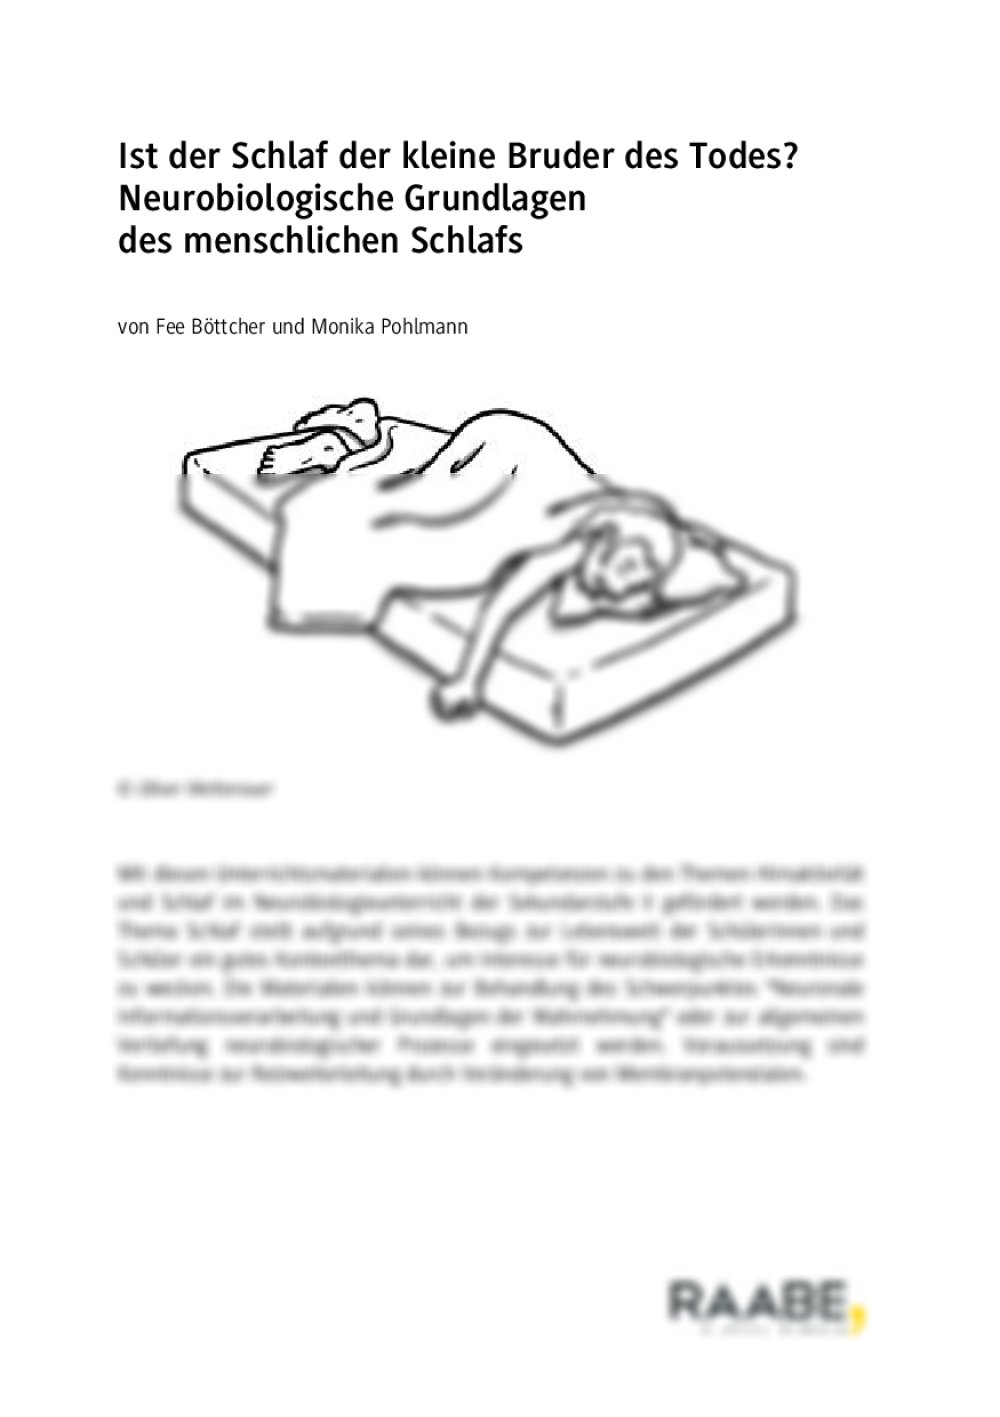 Neurobiologische Grundlagen des menschlichen Schlafs - Seite 1